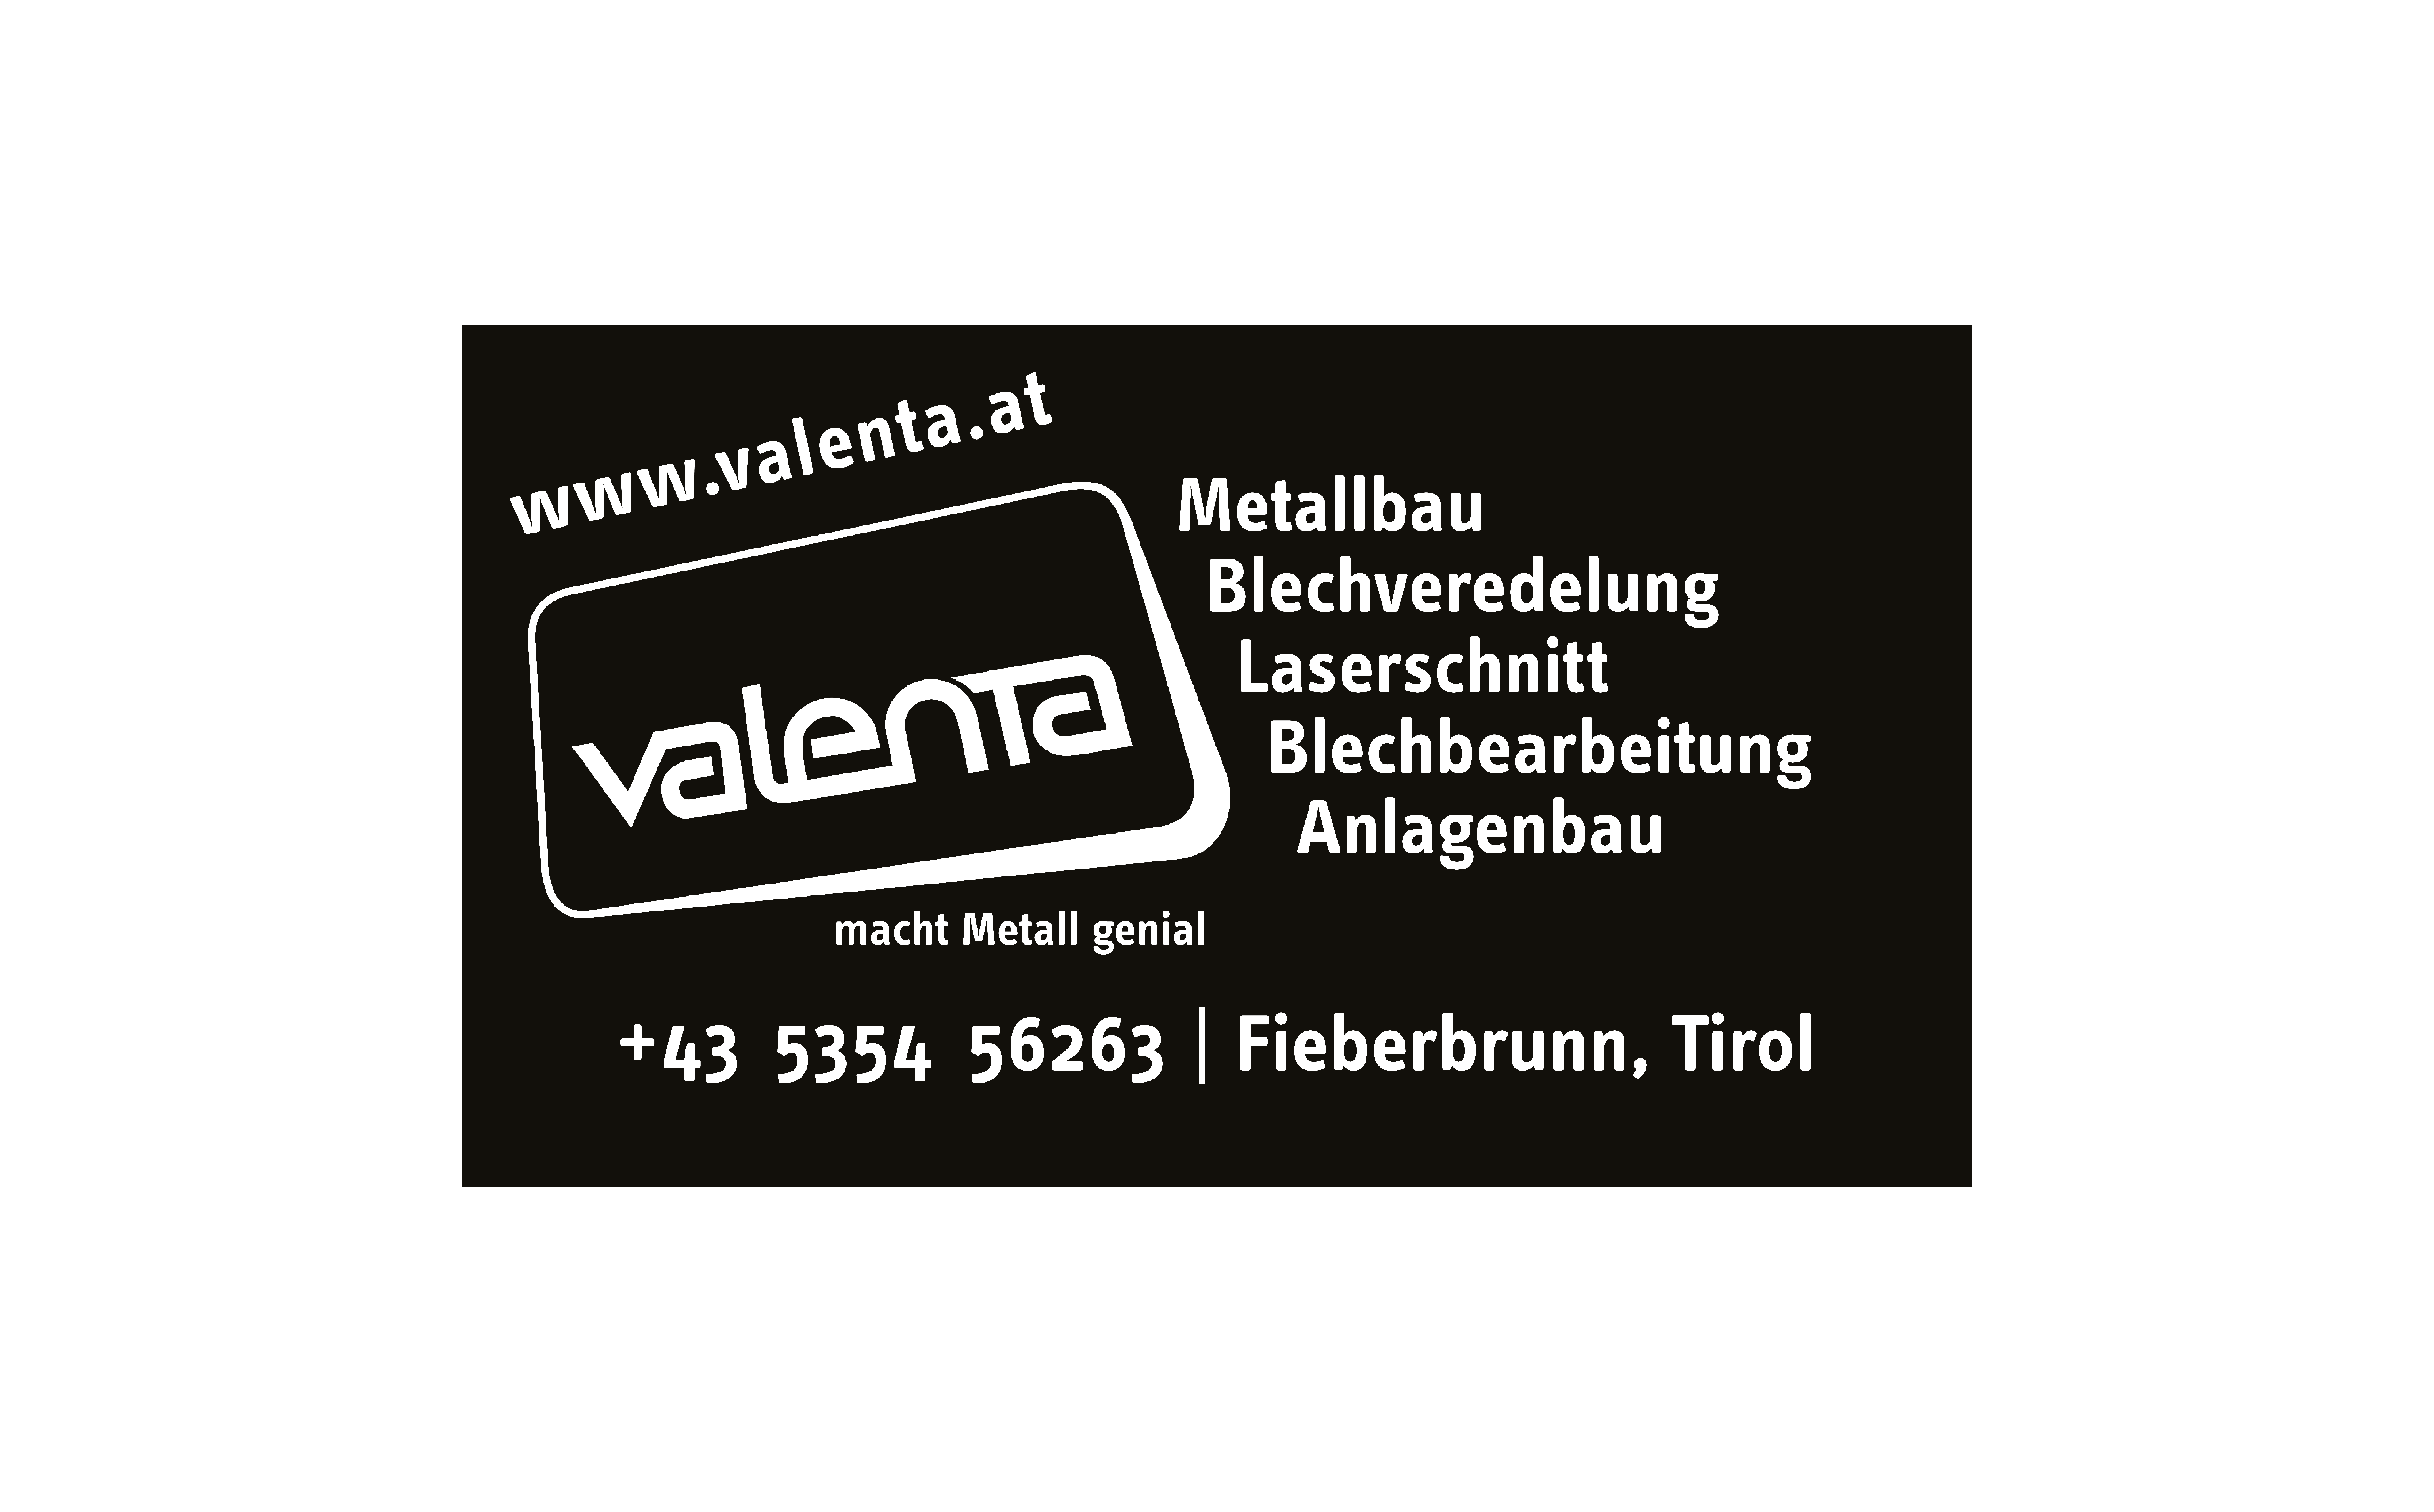 Valenta